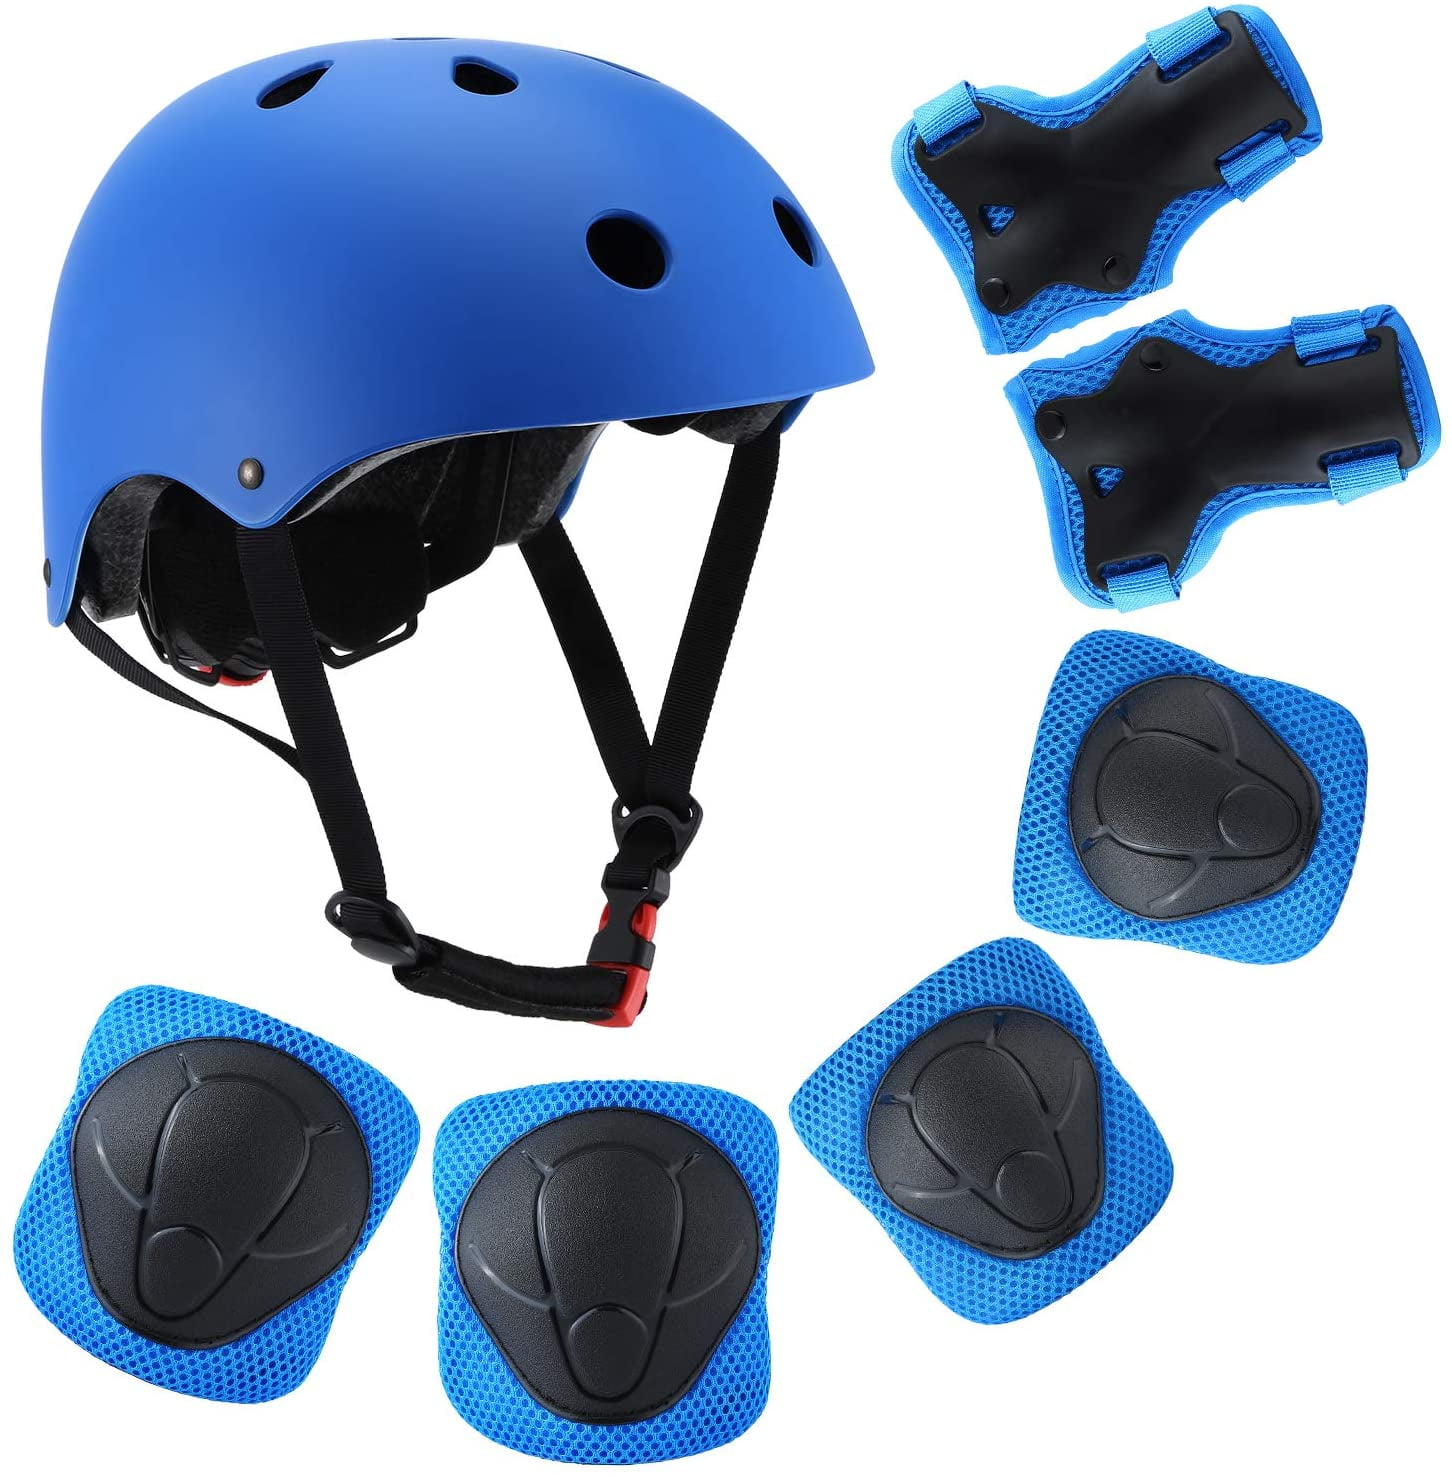 Kids Safety Bike Adjustable Helmet Skateboard Helmet for Bike Cycling Skating US 